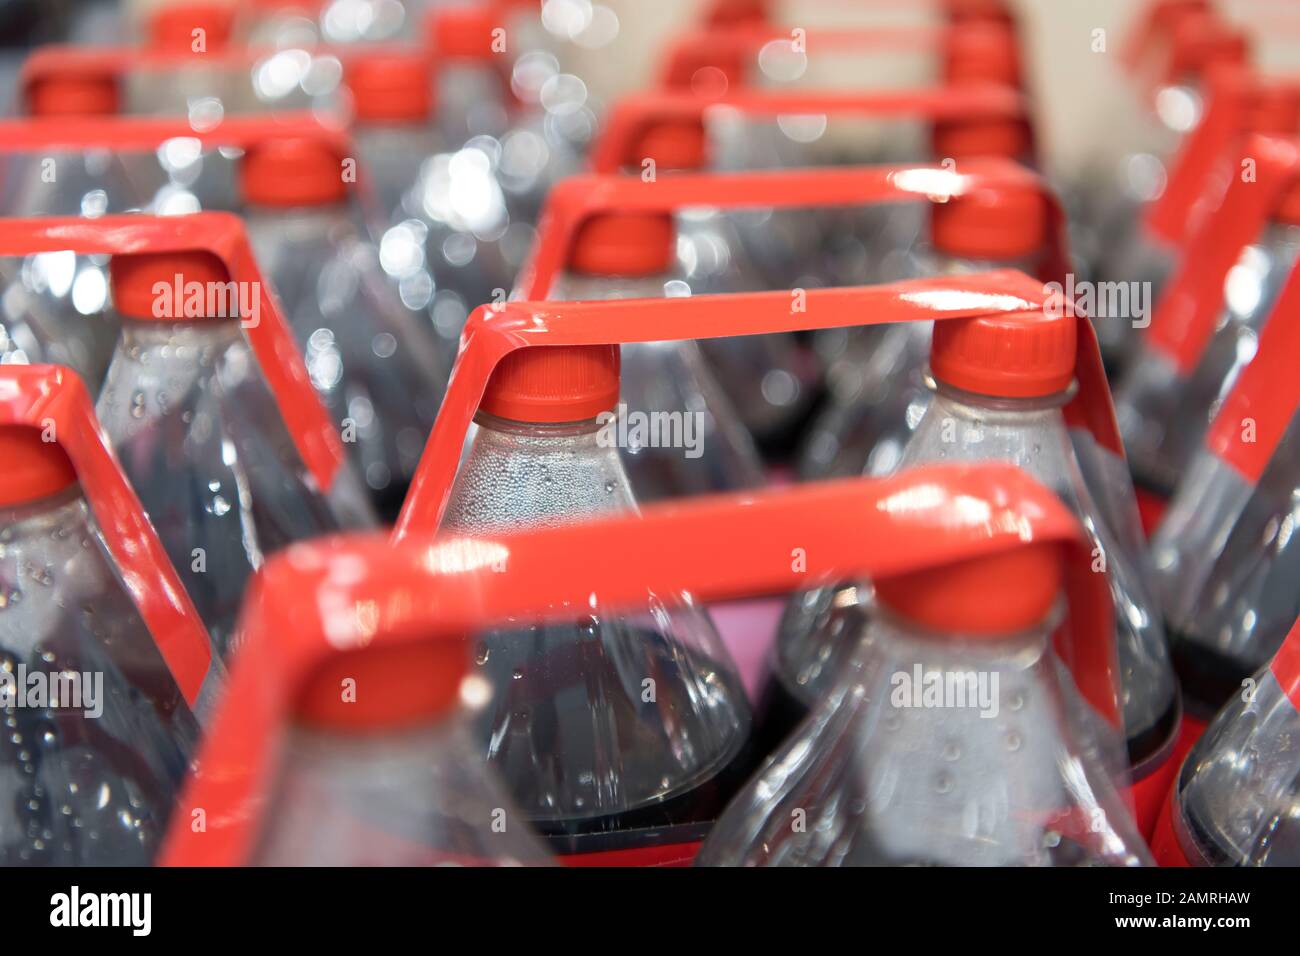 Coca Cola bottiglie in vendita in un supermercato del Regno Unito. Foto Stock